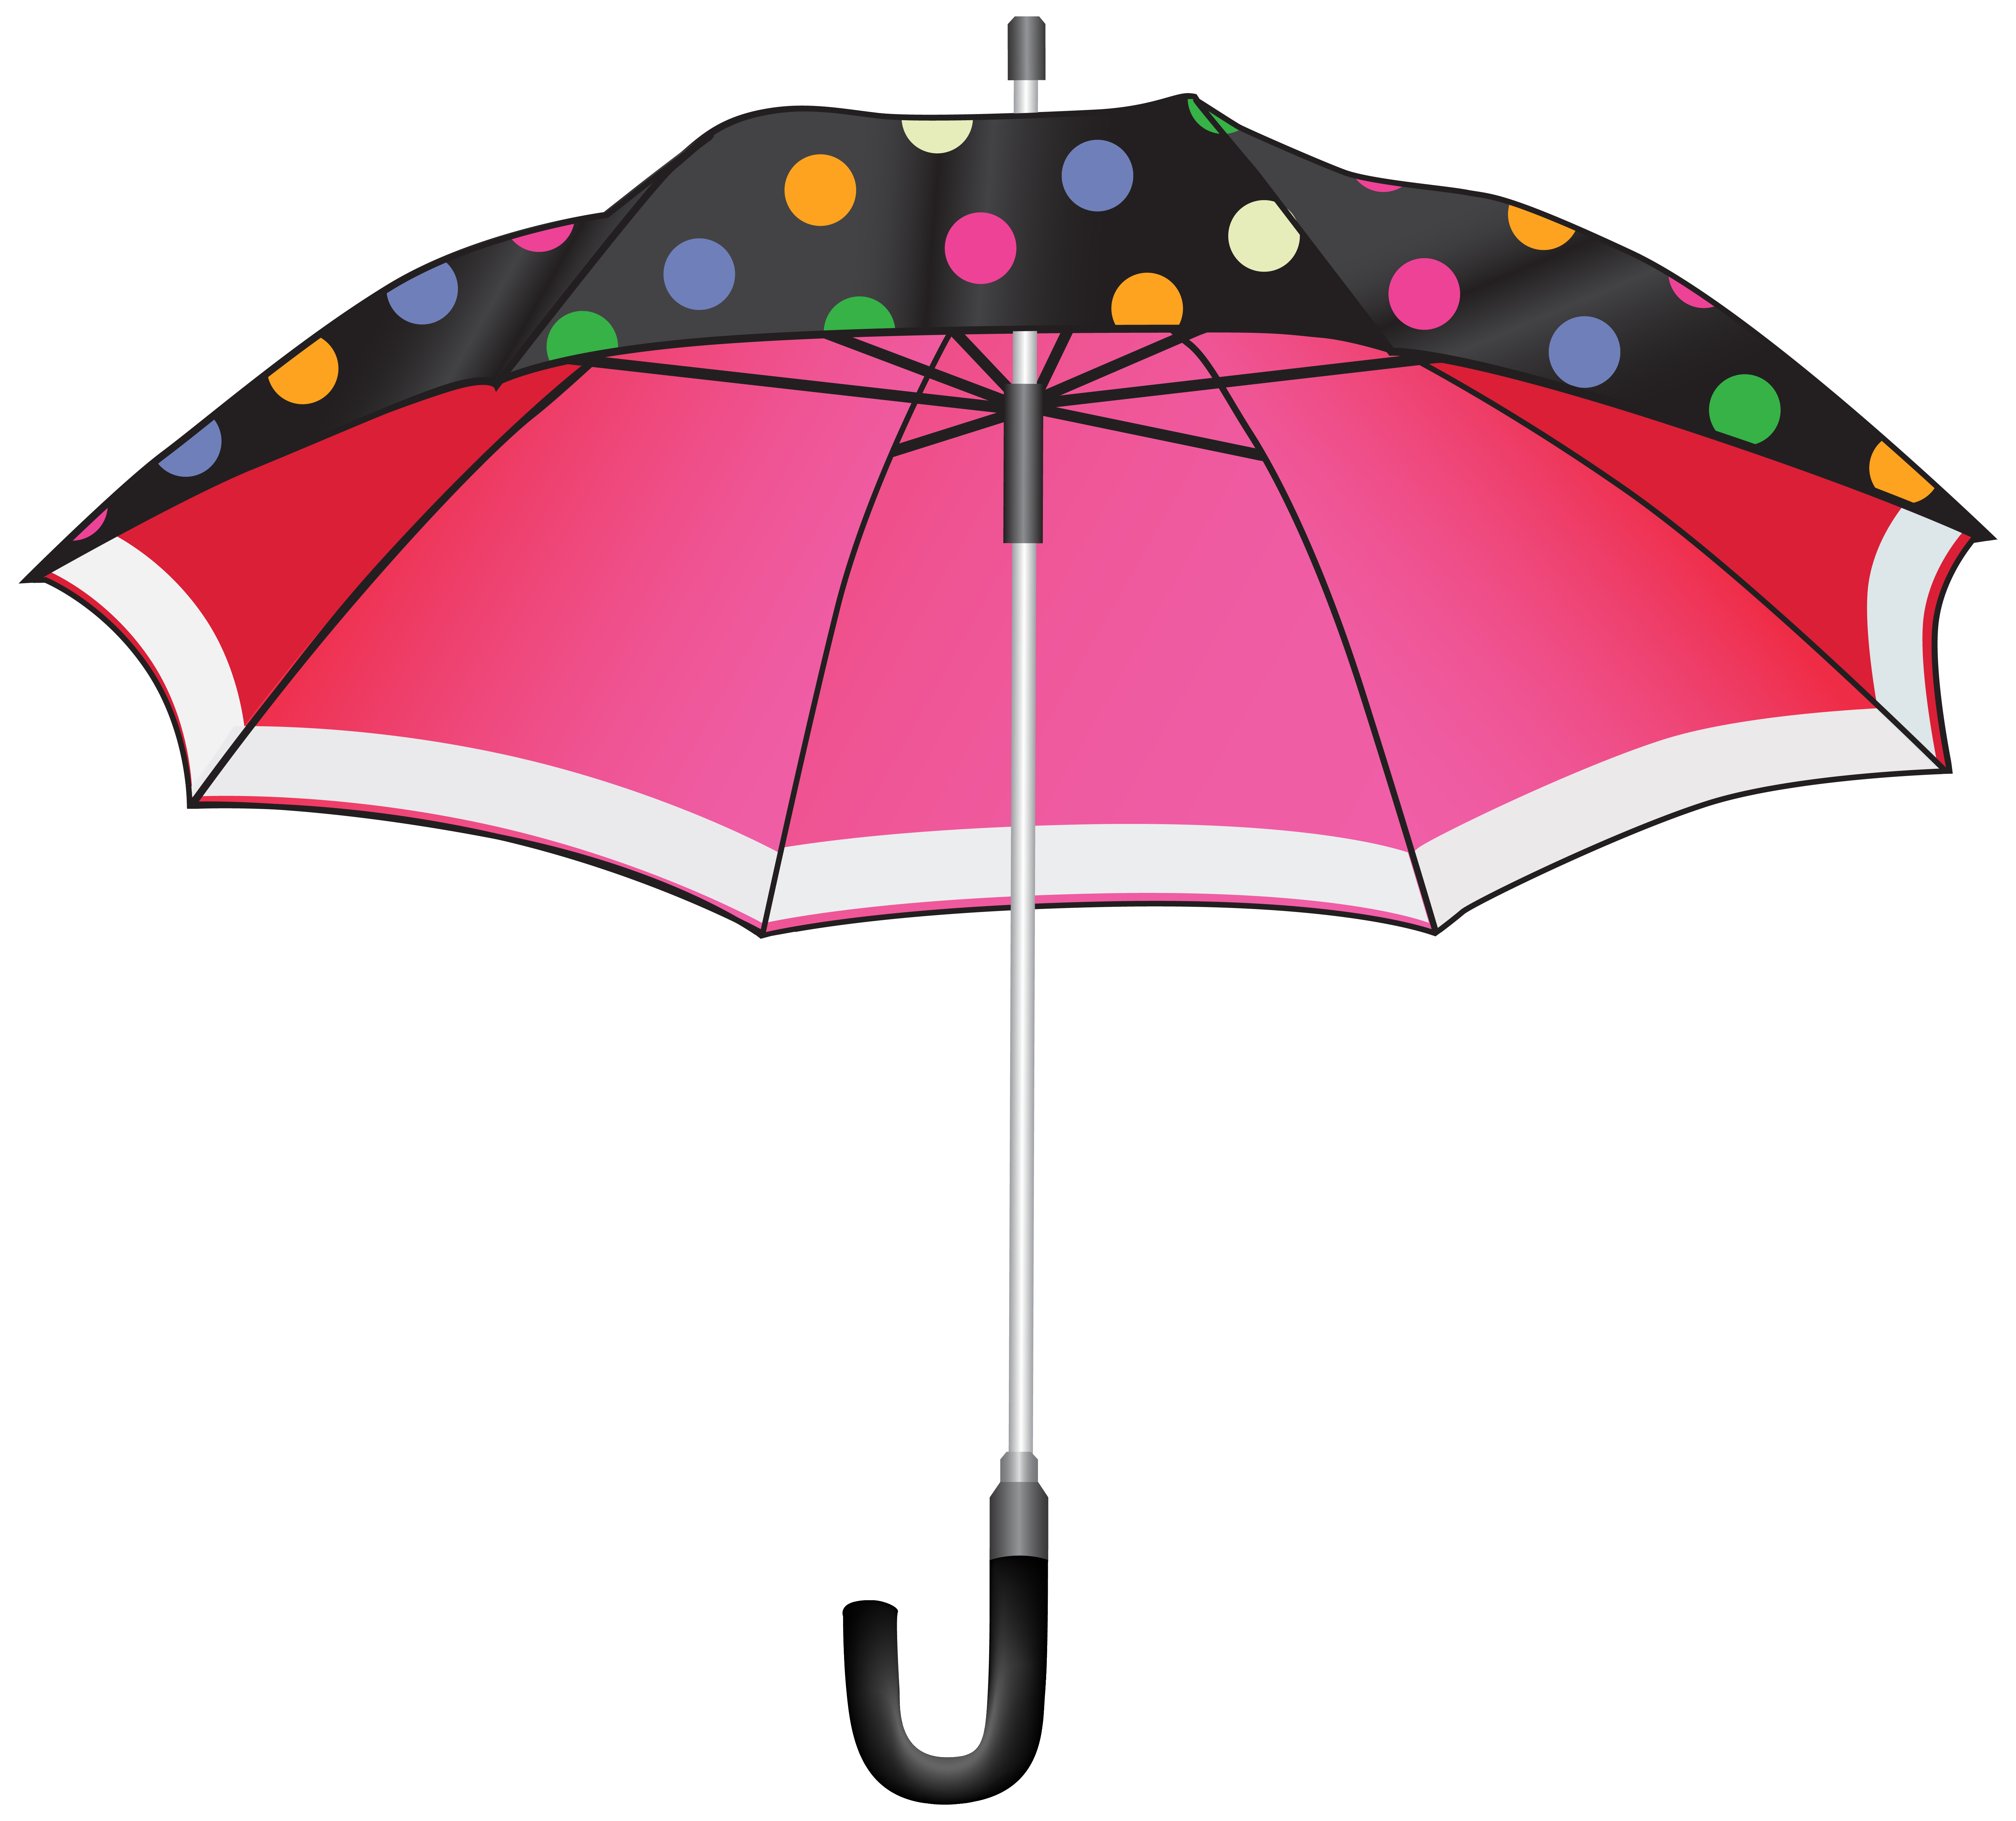 Umbrella Clip art - rain png download - 6155*5559 - Free Transparent